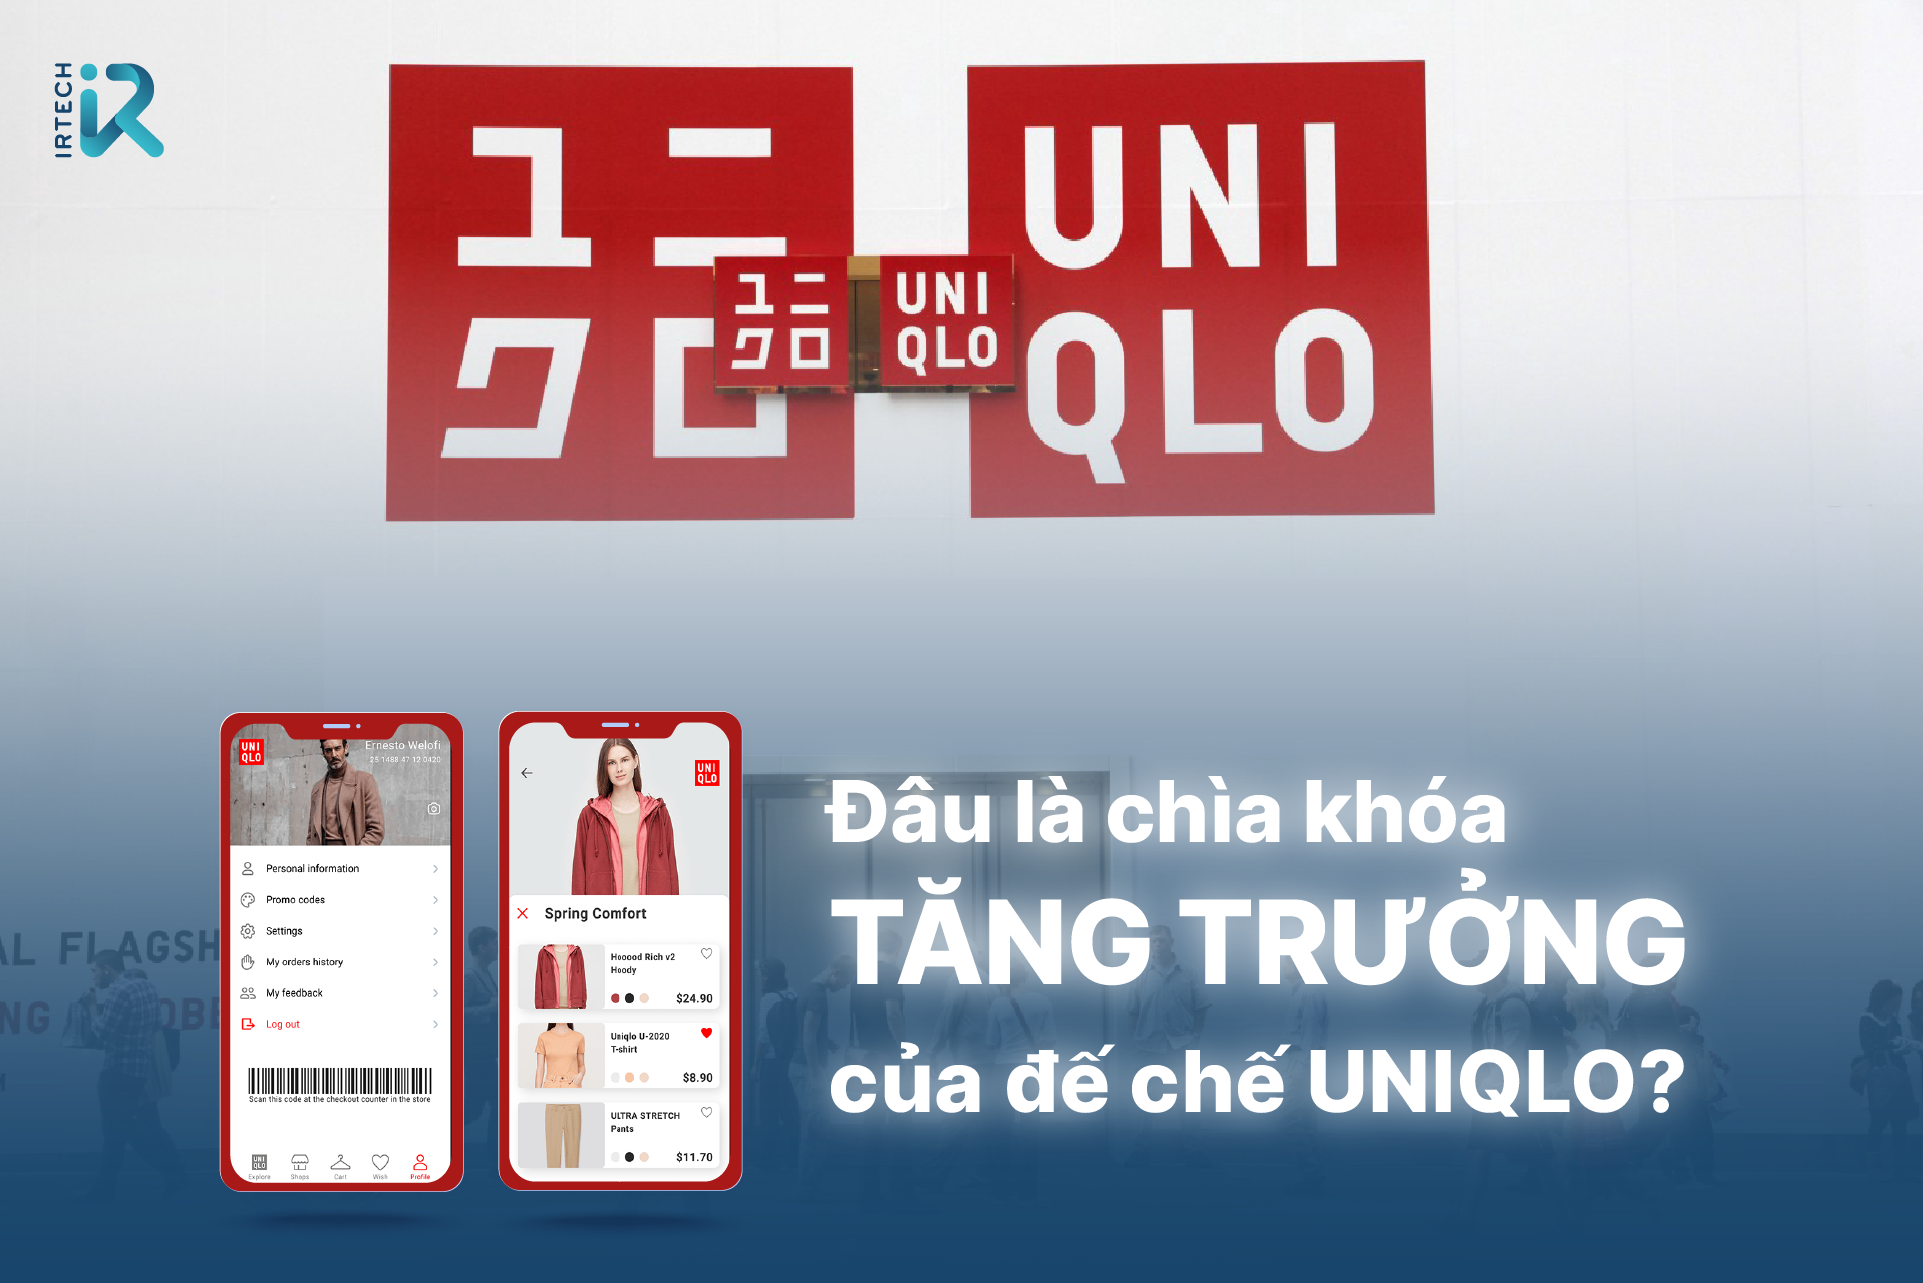 CÙNG UNIQLO THỰC HIỆN CÁC BIỆN PHÁP PHÒNG DỊCH AN TOÀN Sức khỏe của khách  hàng luôn là ưu tiên hàng đầu vì vậy nhằm đảm bảo môi trường  UNIQLO  Vietnam 